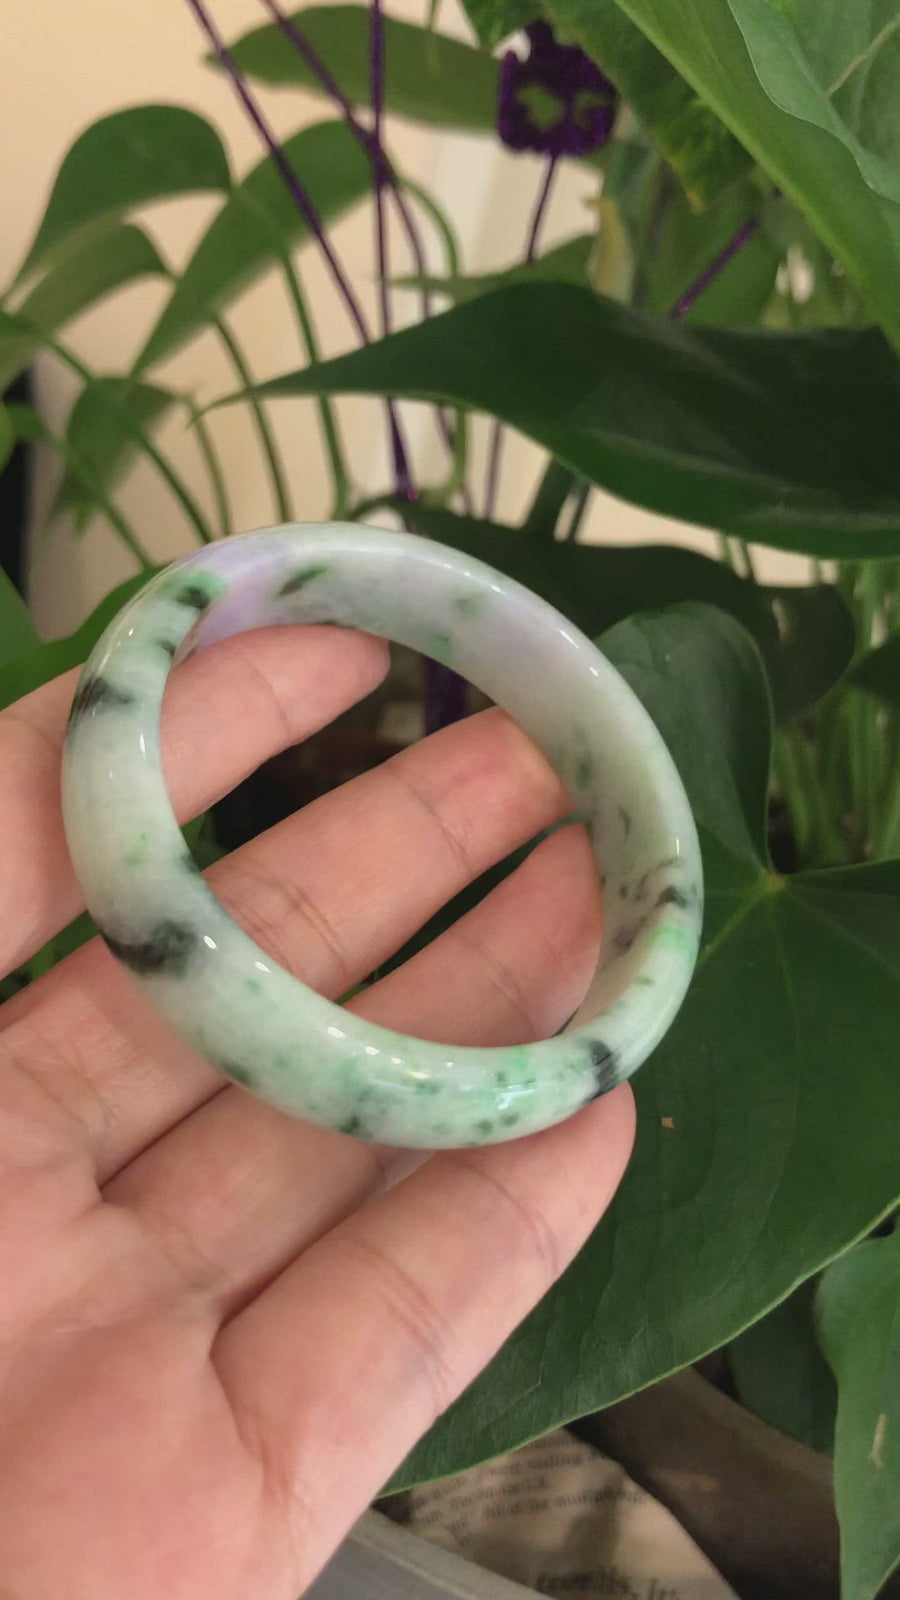 Natural Jadeite Lavender Green Bangle Bracelet (54mm)#SZS1006